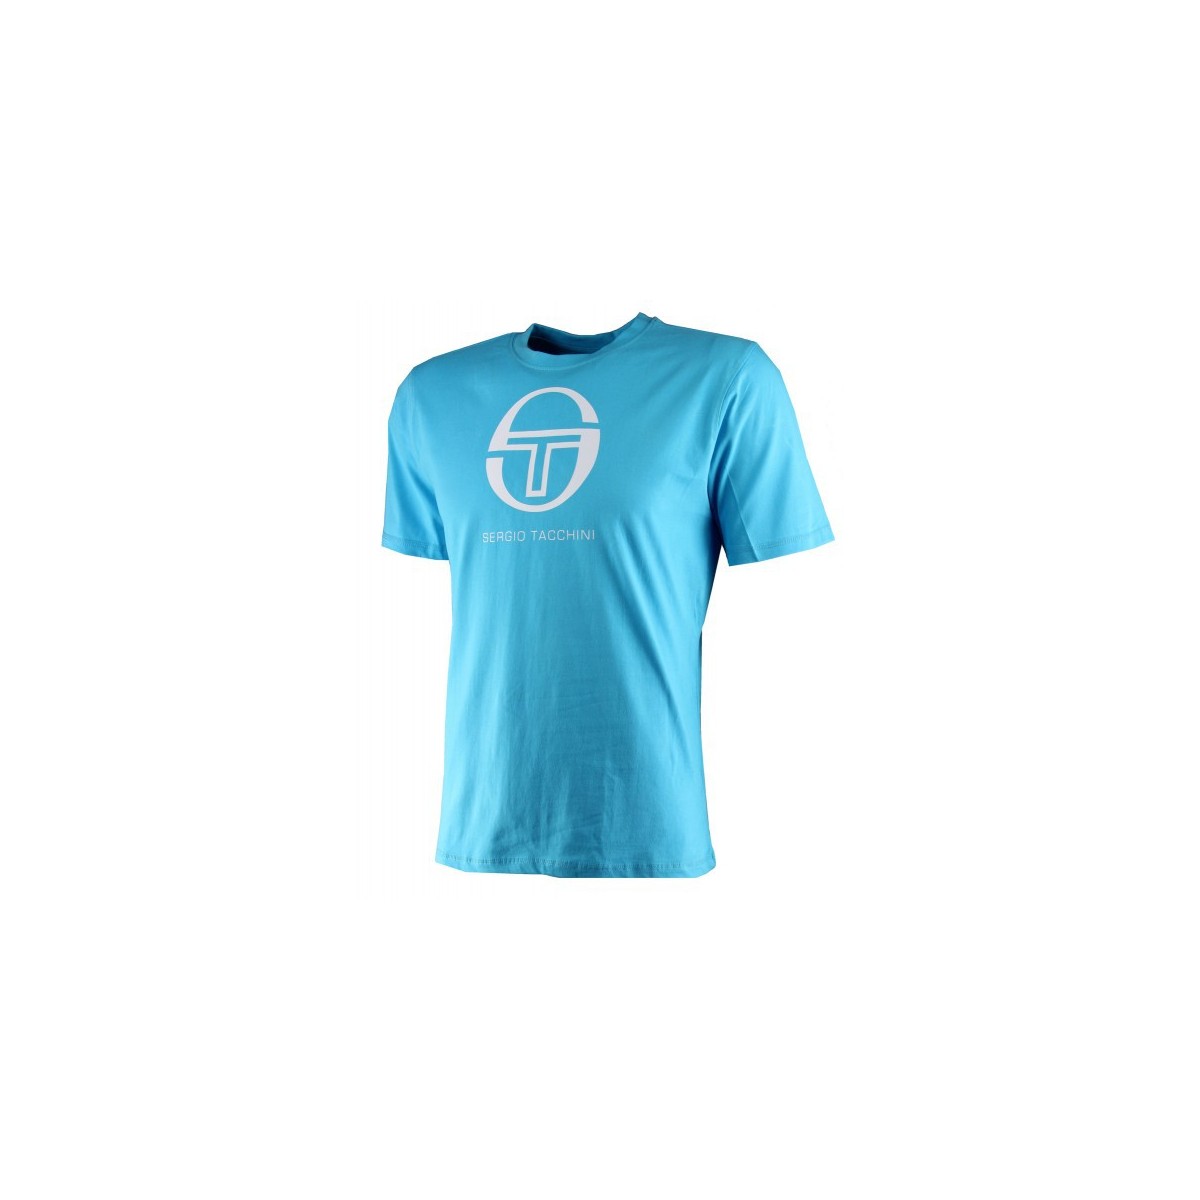 T-shirt Tachini Ace bright Turquoise